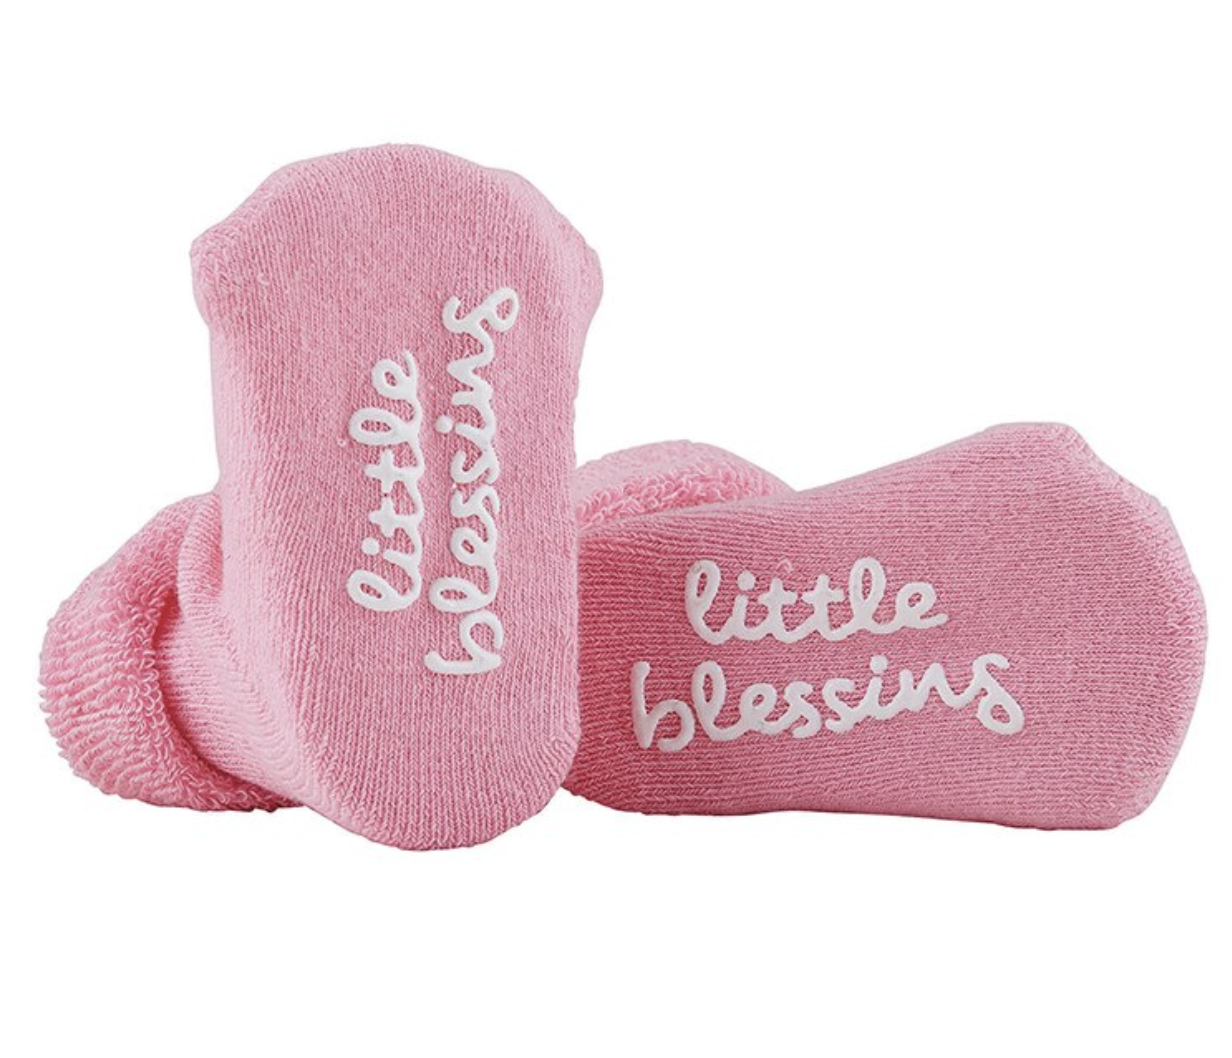 Little Blessing Pink Socks